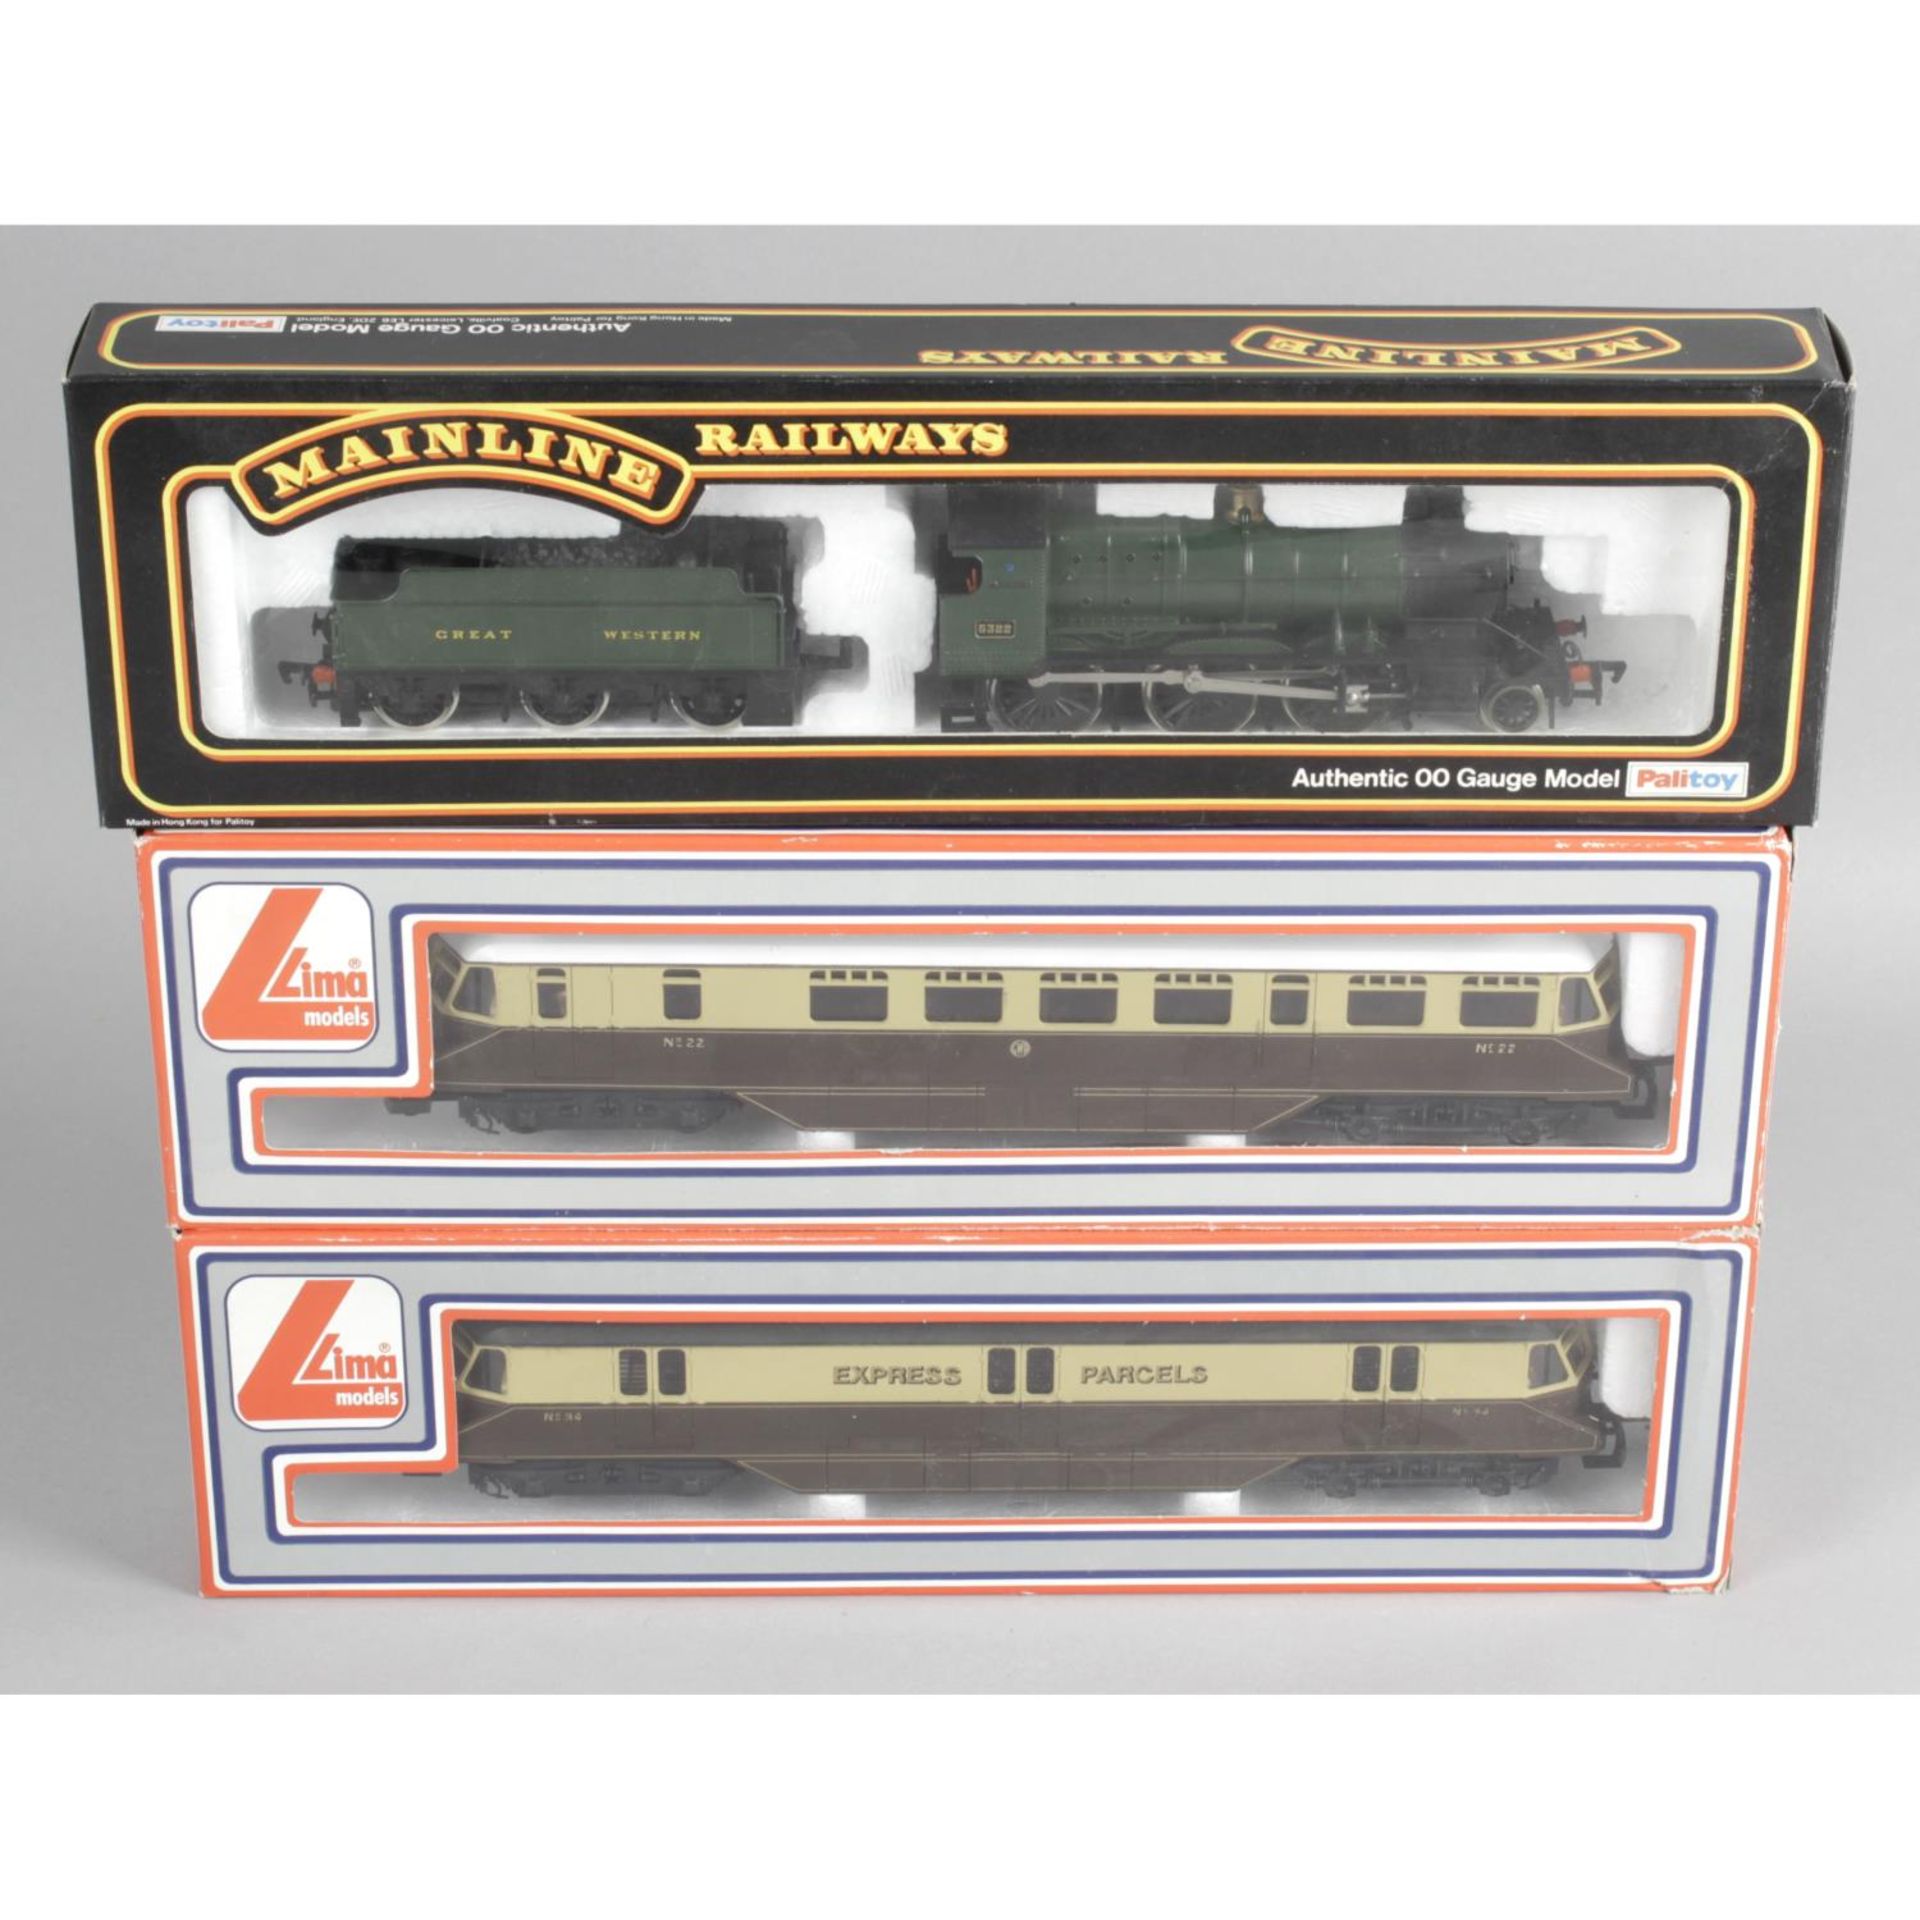 Ten assorted 00 gauge model railway locomotives and trains,